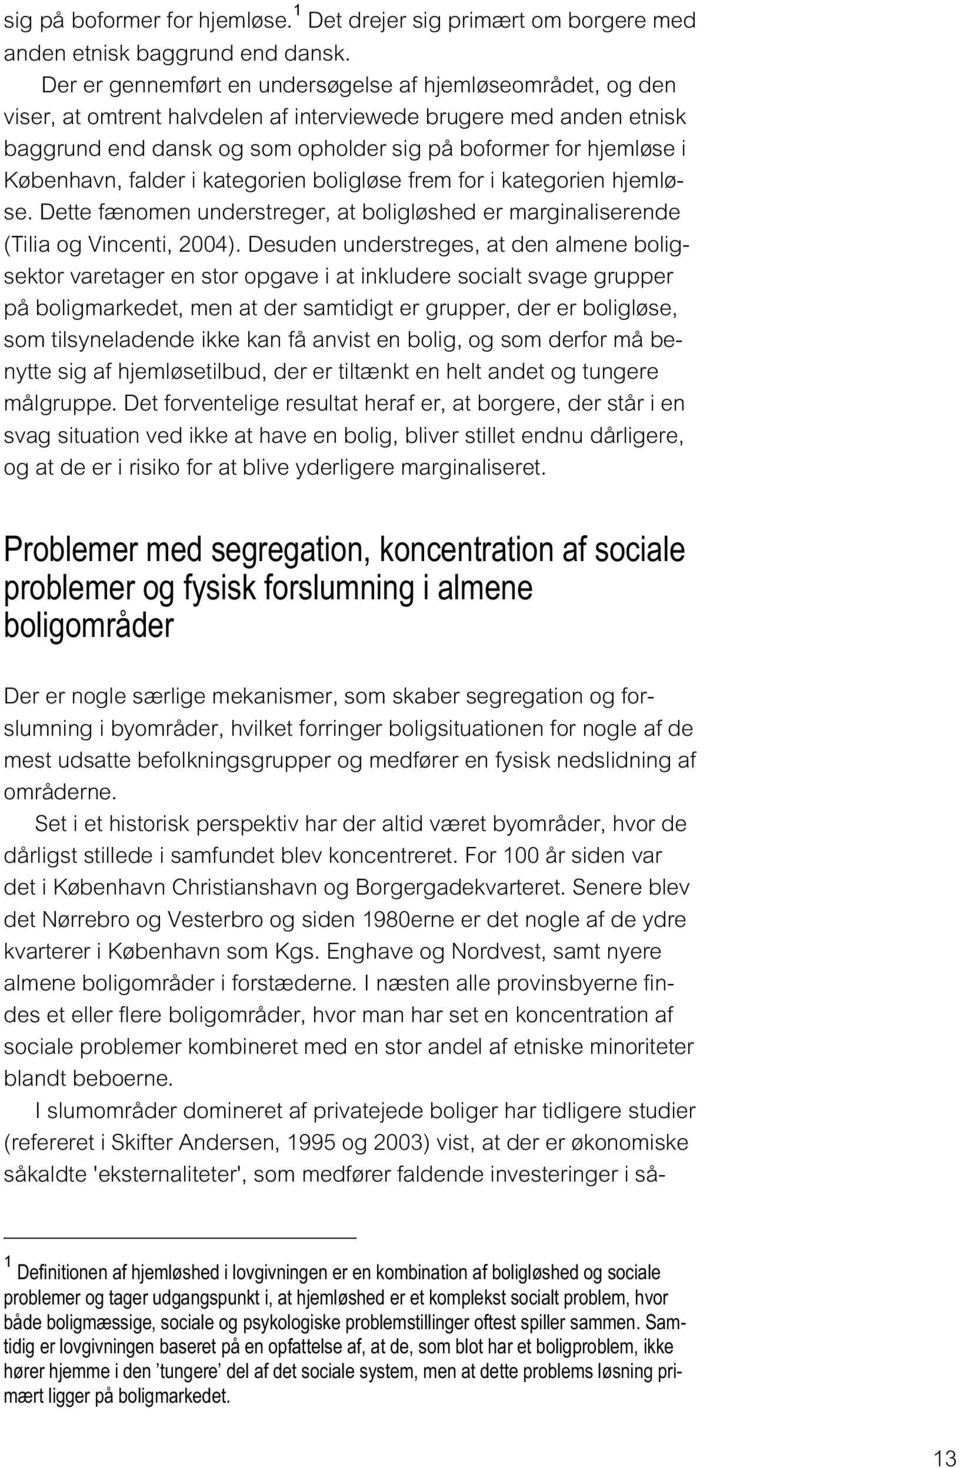 København, falder i kategorien boligløse frem for i kategorien hjemløse. Dette fænomen understreger, at boligløshed er marginaliserende (Tilia og Vincenti, 2004).